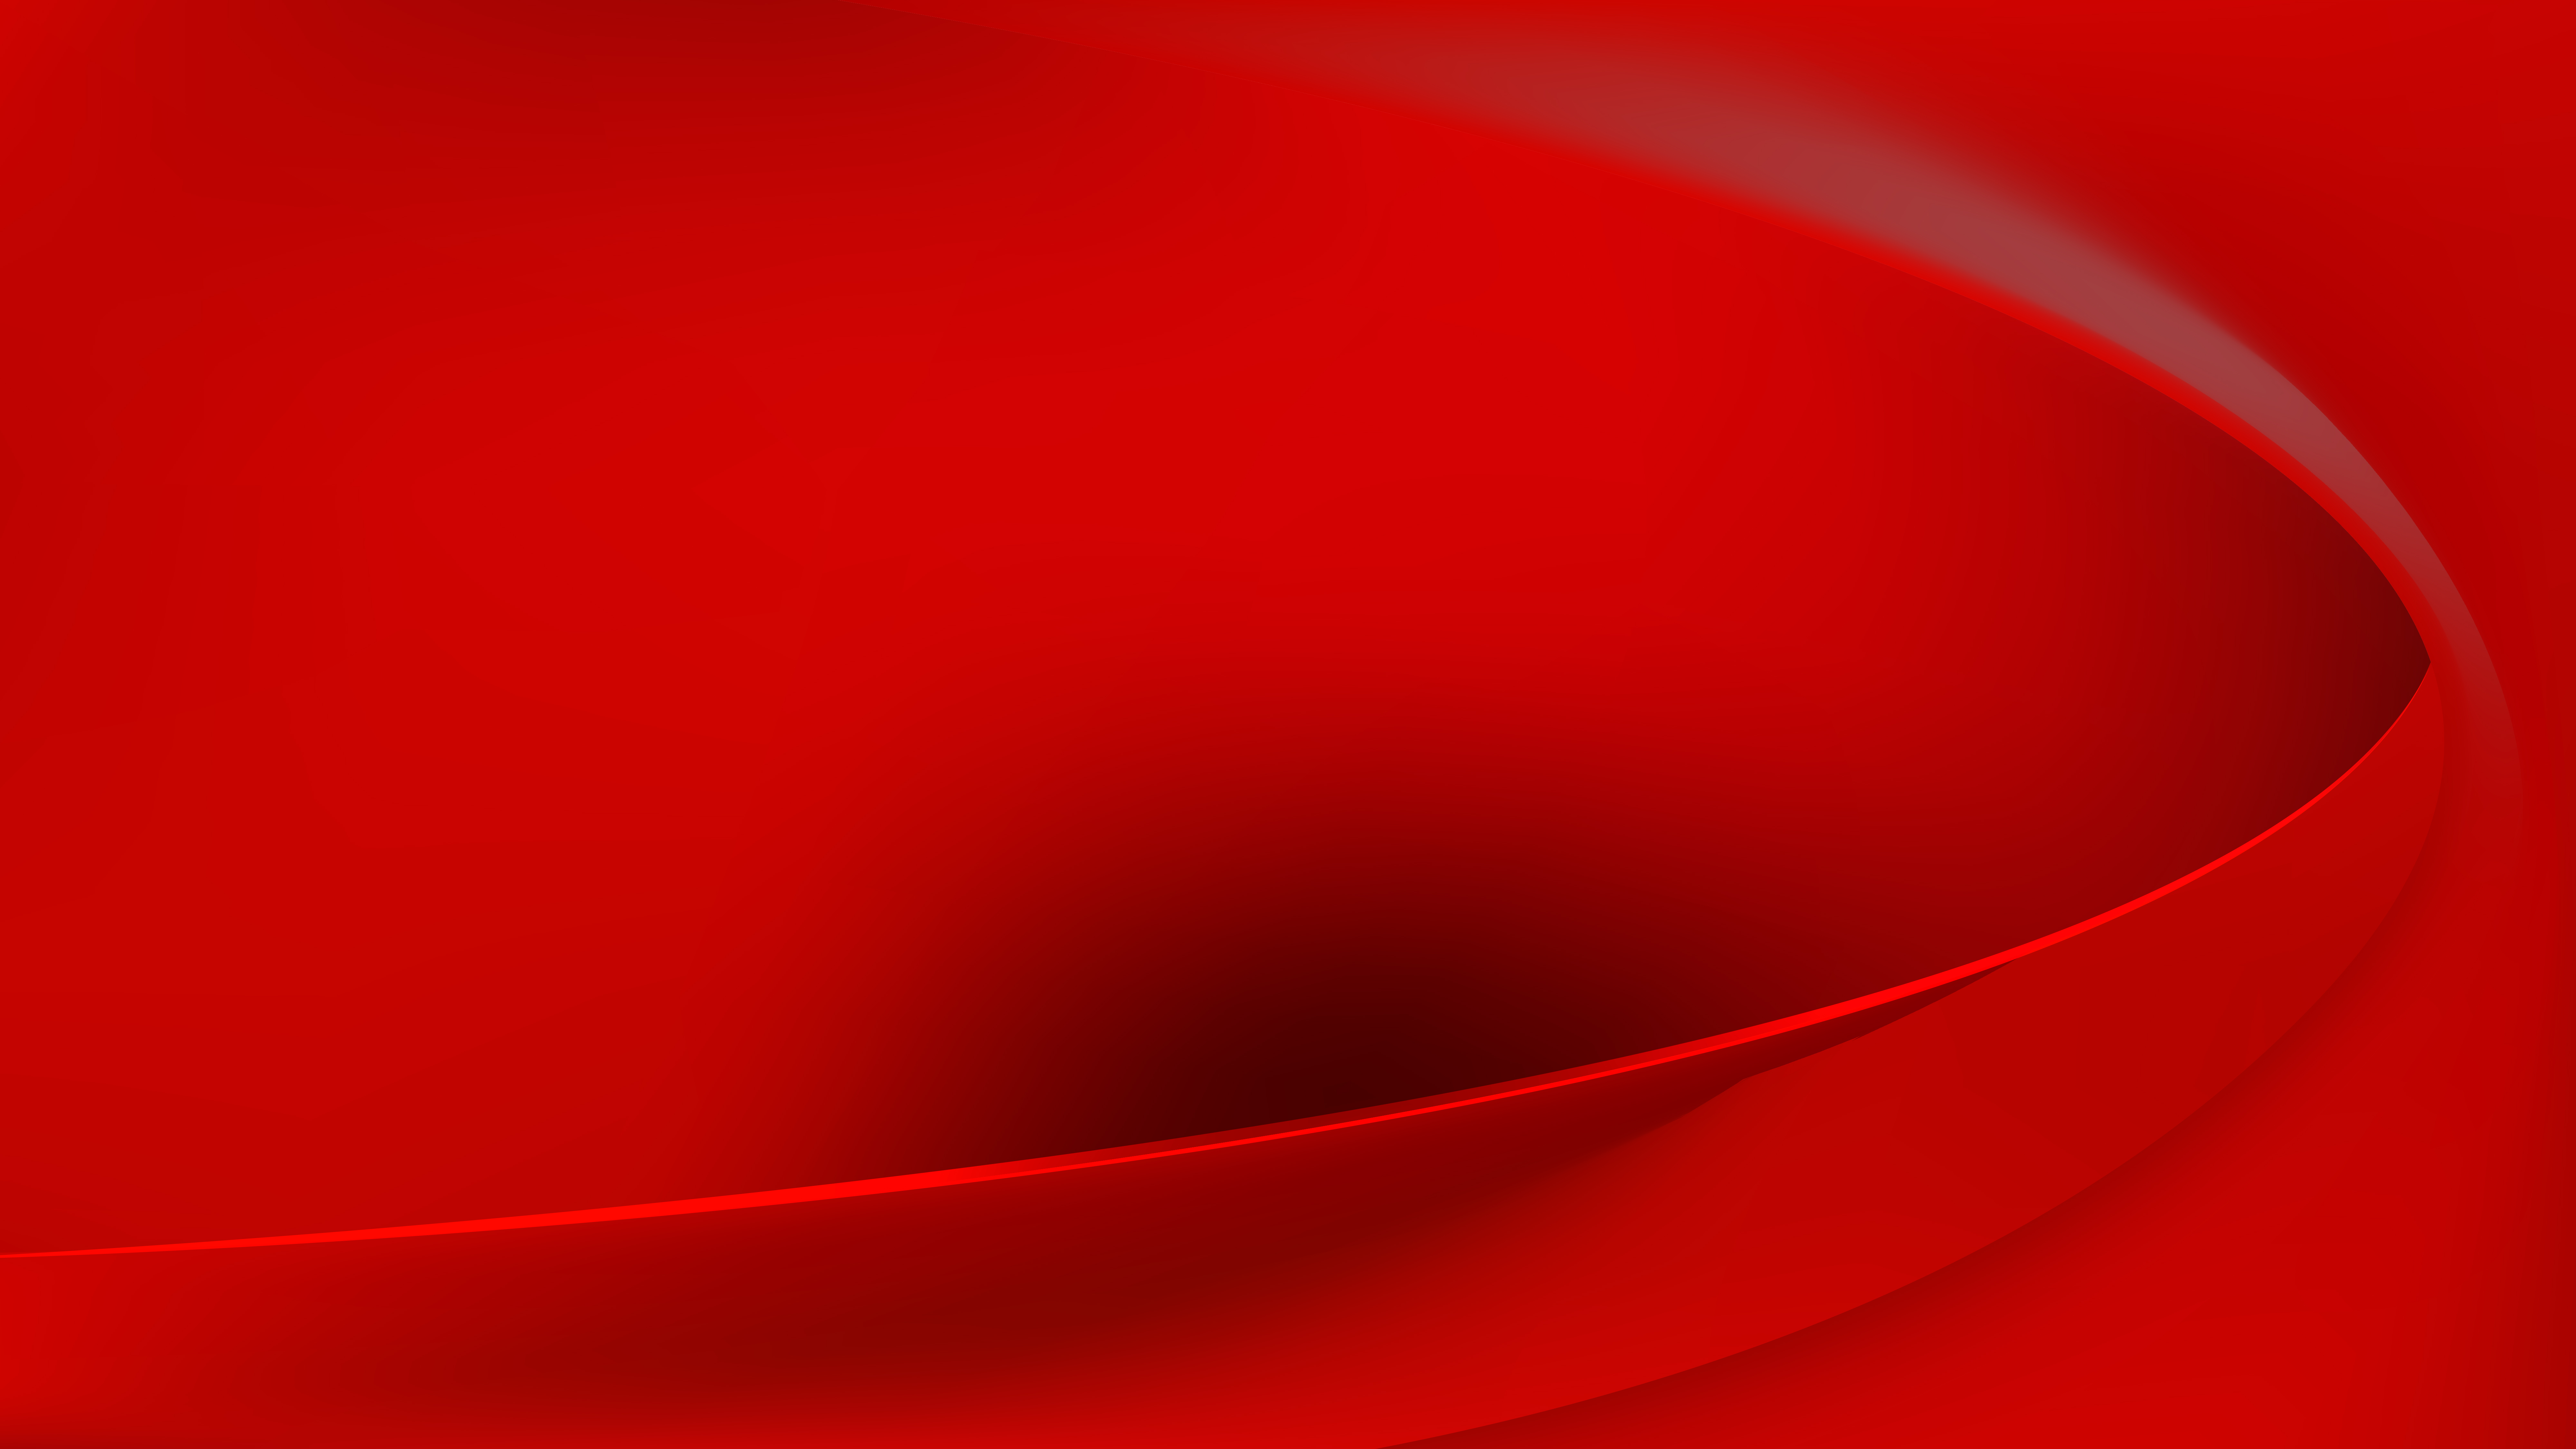 Thiết kế nền sóng đỏ trừu tượng miễn phí là một cách tuyệt vời để thực sự gây ấn tượng với khách hàng. Với màu sắc sáng tạo này, trang web của bạn sẽ thật sự nổi bật và thu hút được sự chú ý của khách hàng.